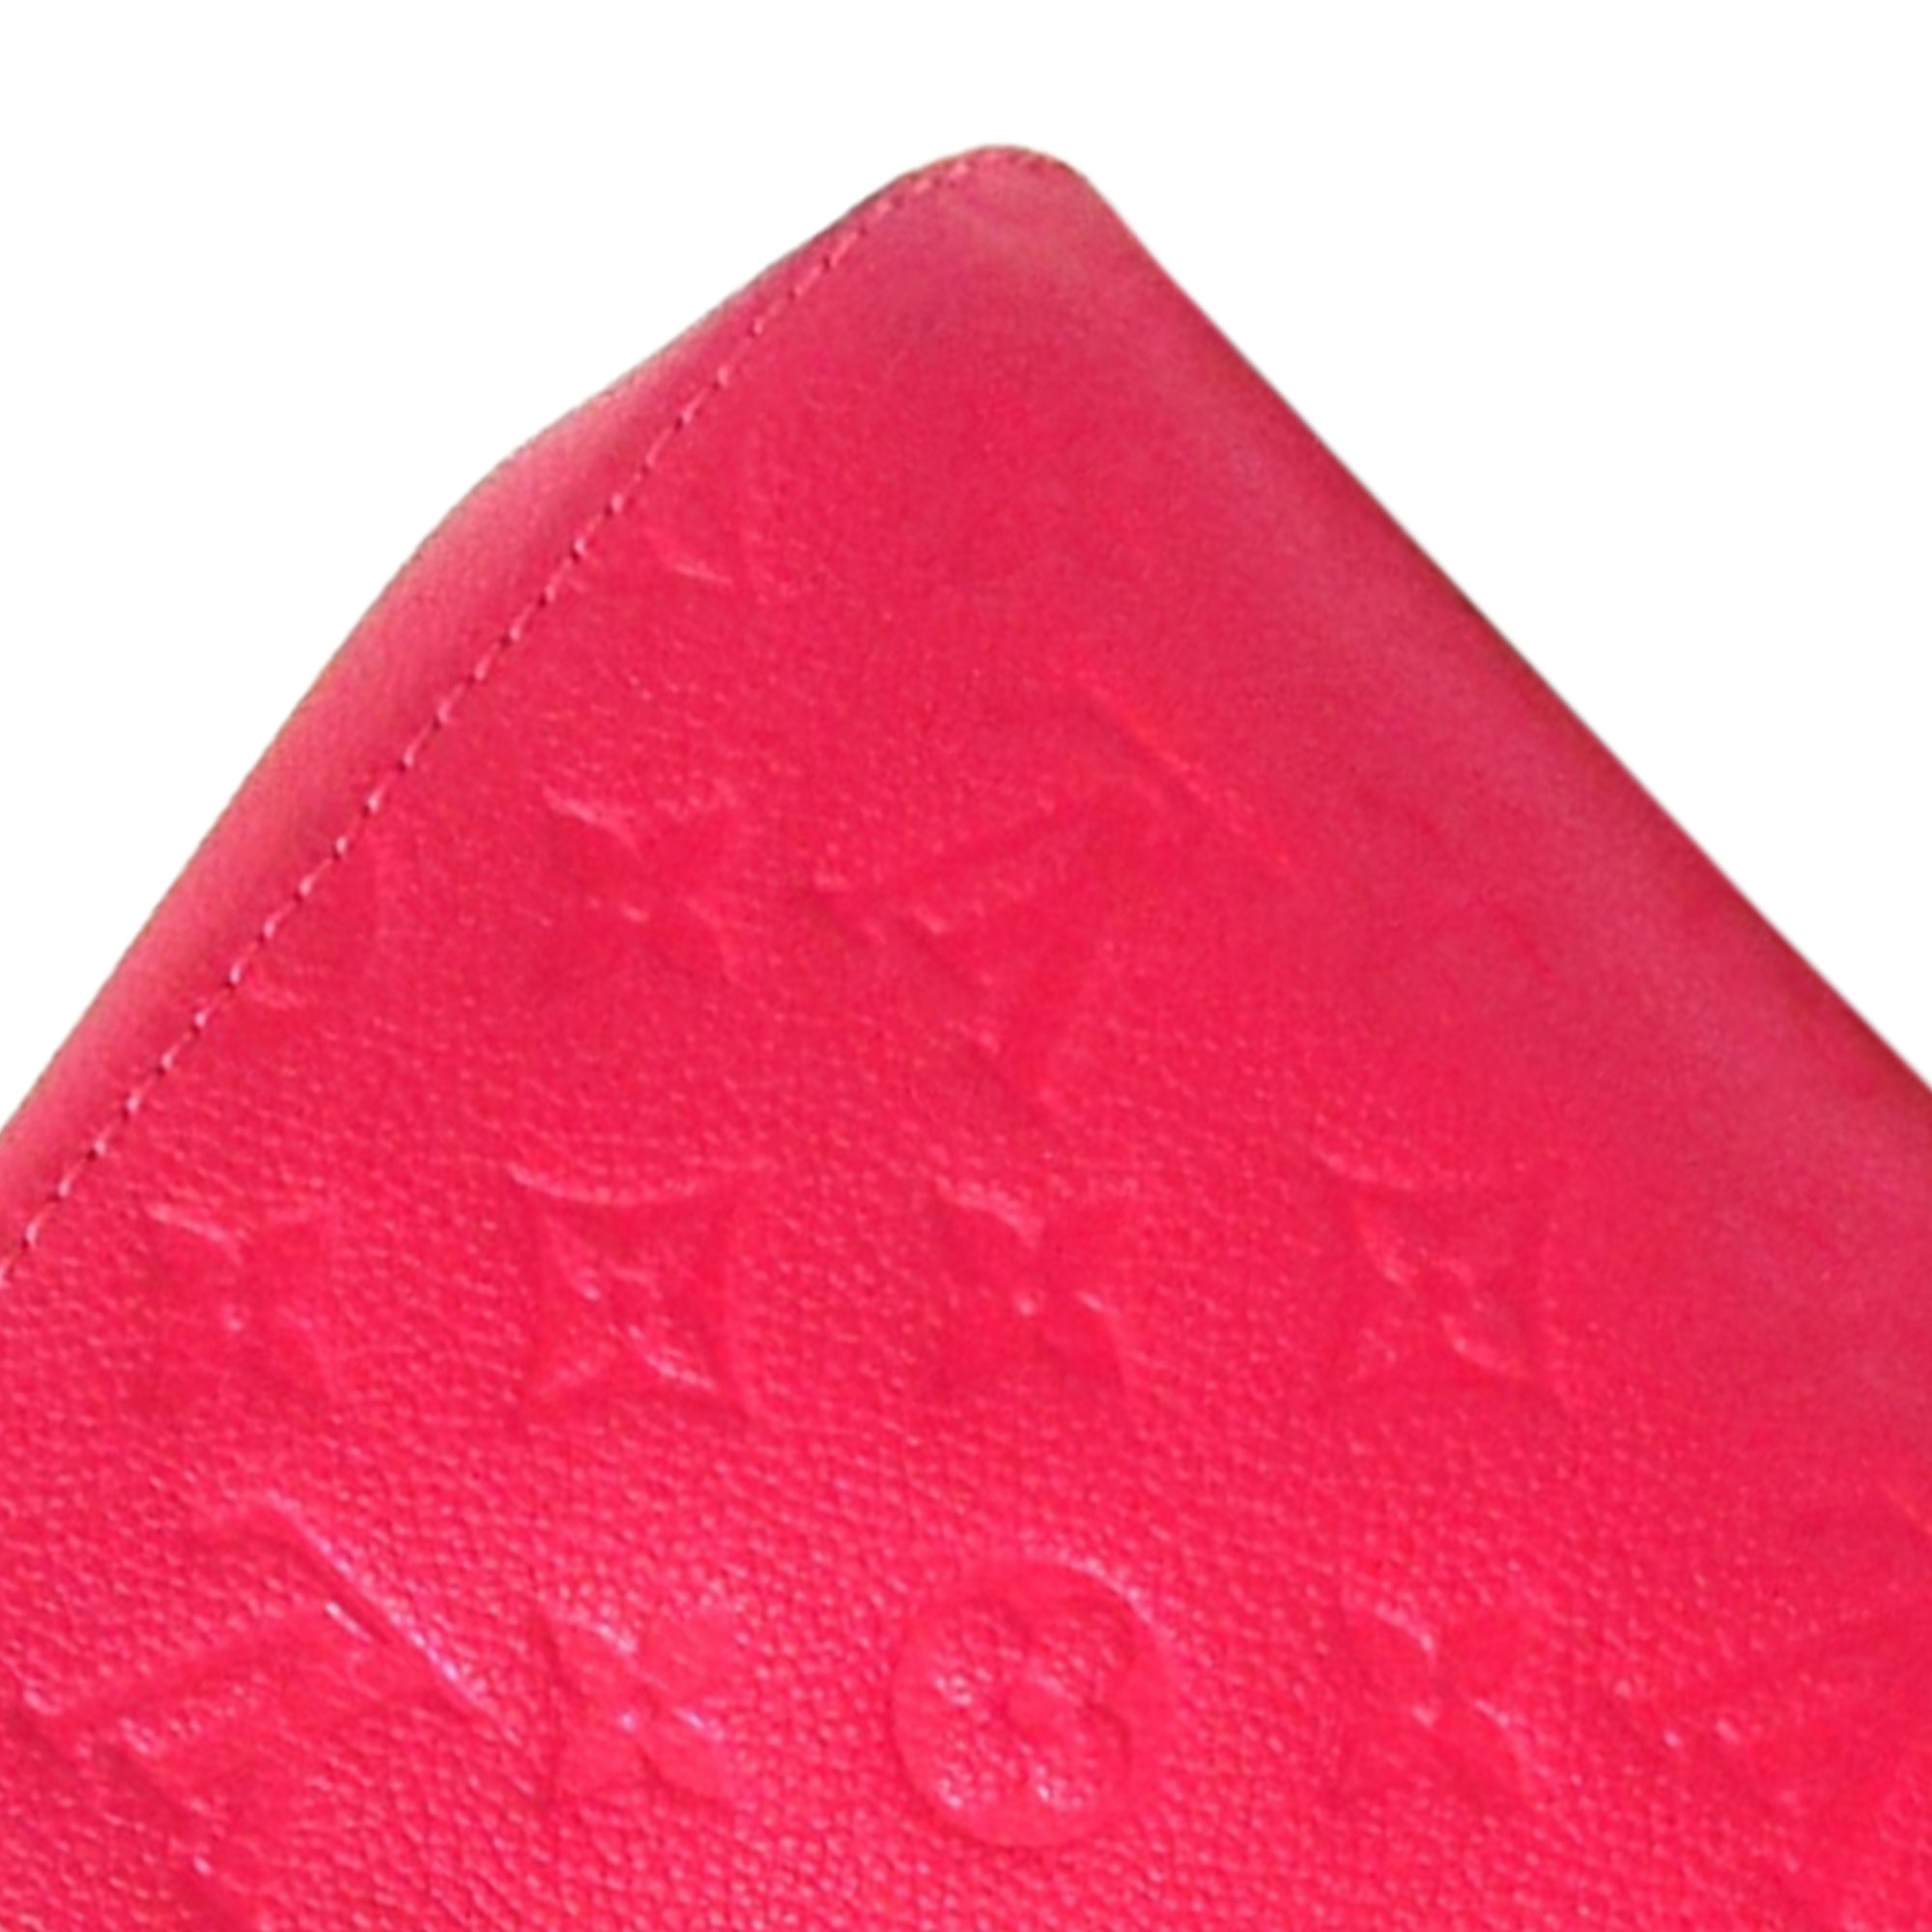 Preloved Louis Vuitton Montaigne Bb Pink Empreinte Monogram Bag with Crossbody Strap SP0138 092623